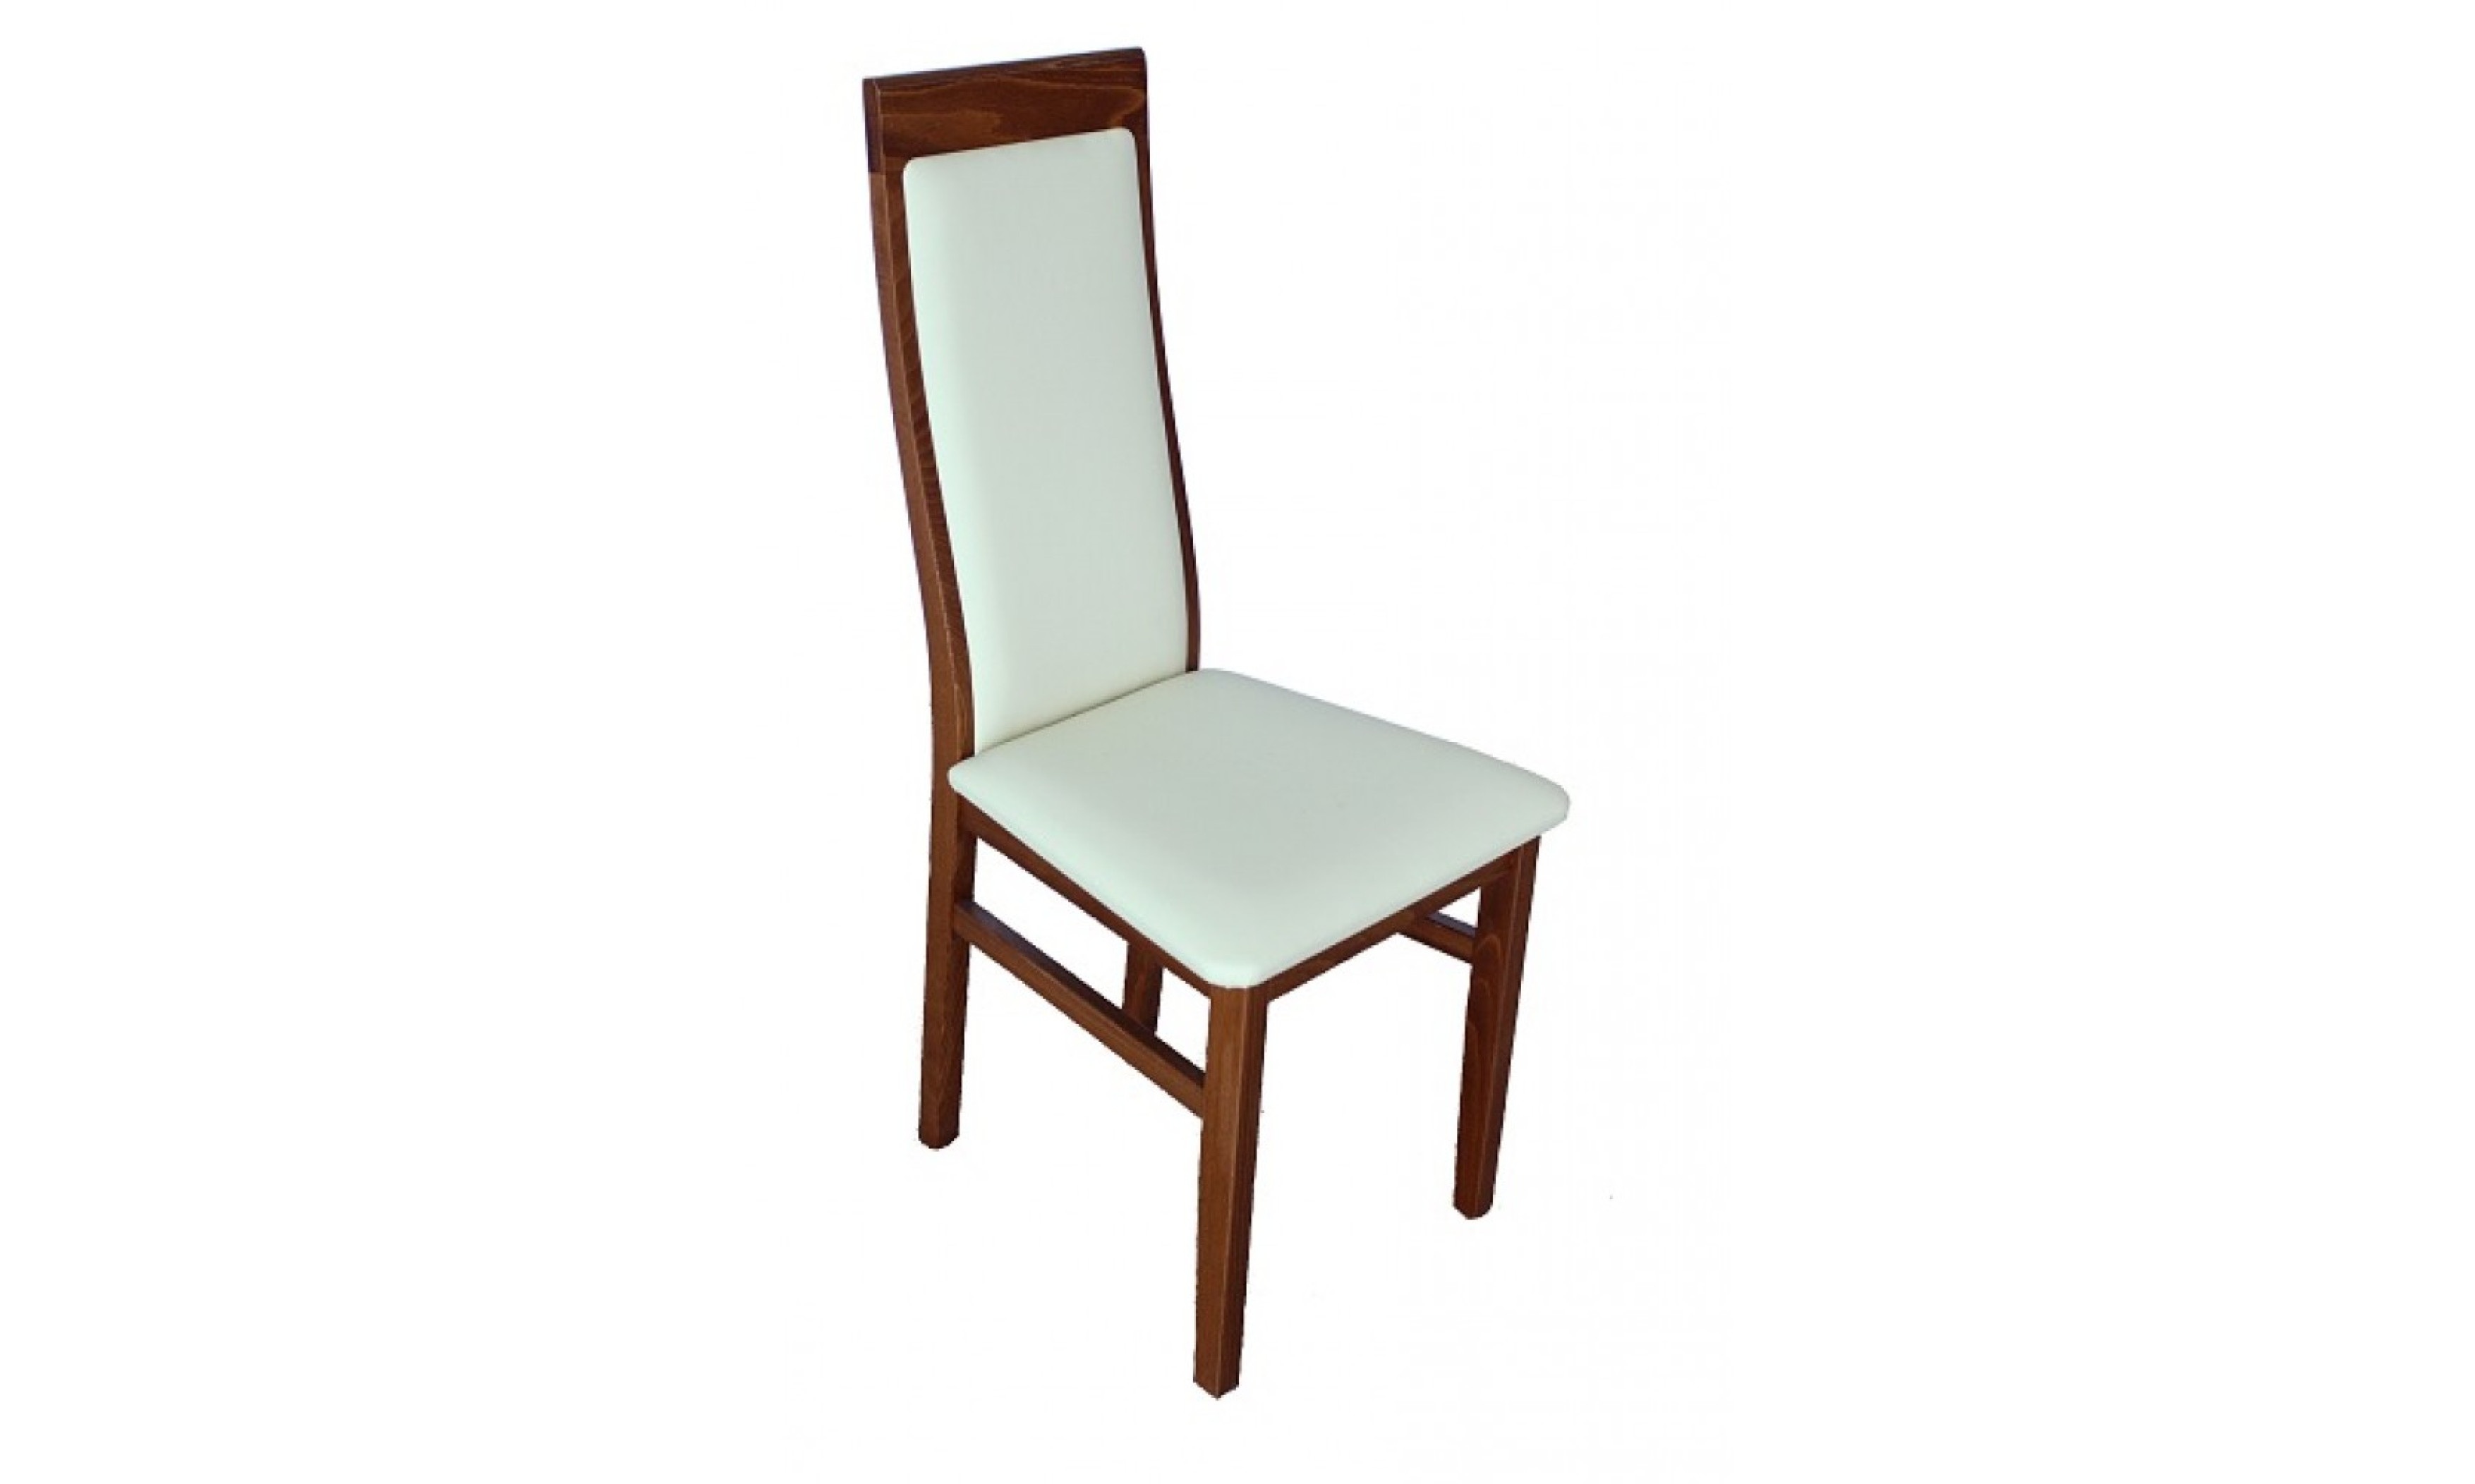 Betti szék